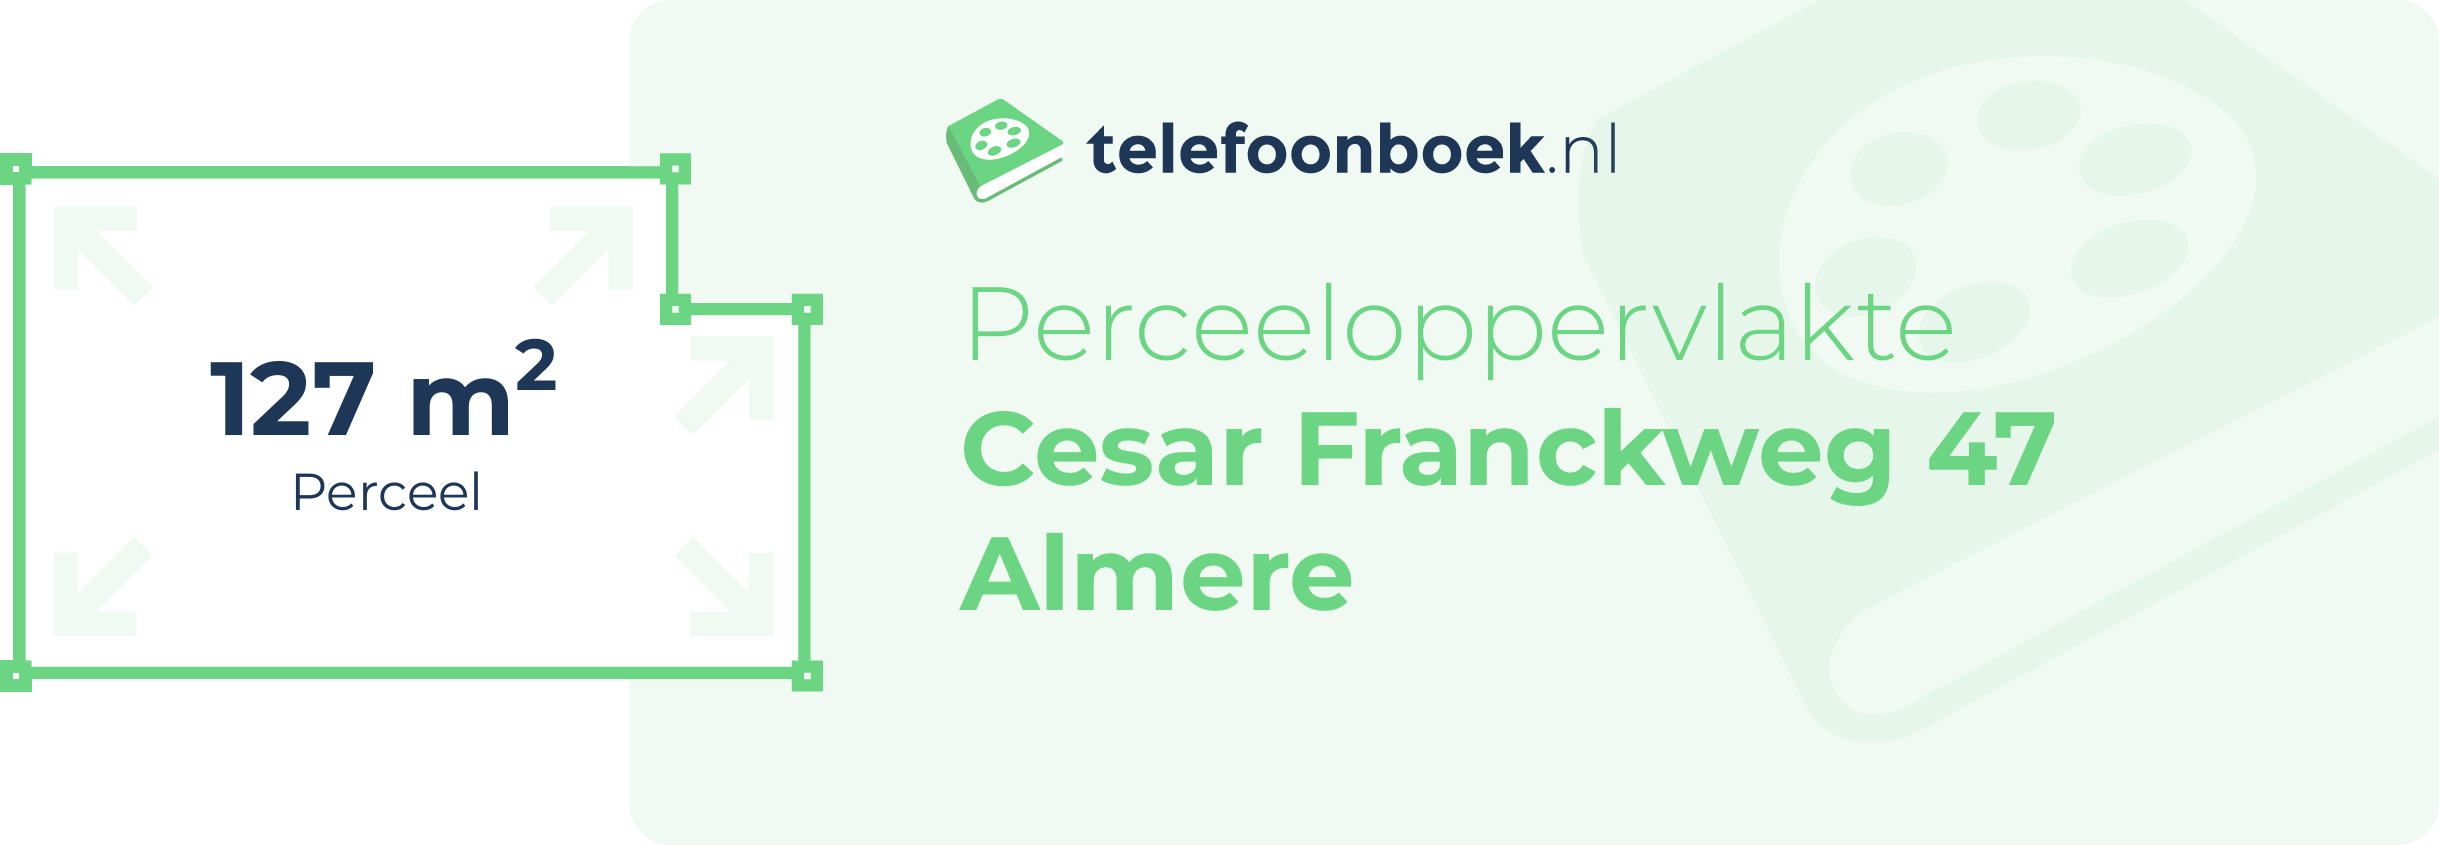 Perceeloppervlakte Cesar Franckweg 47 Almere